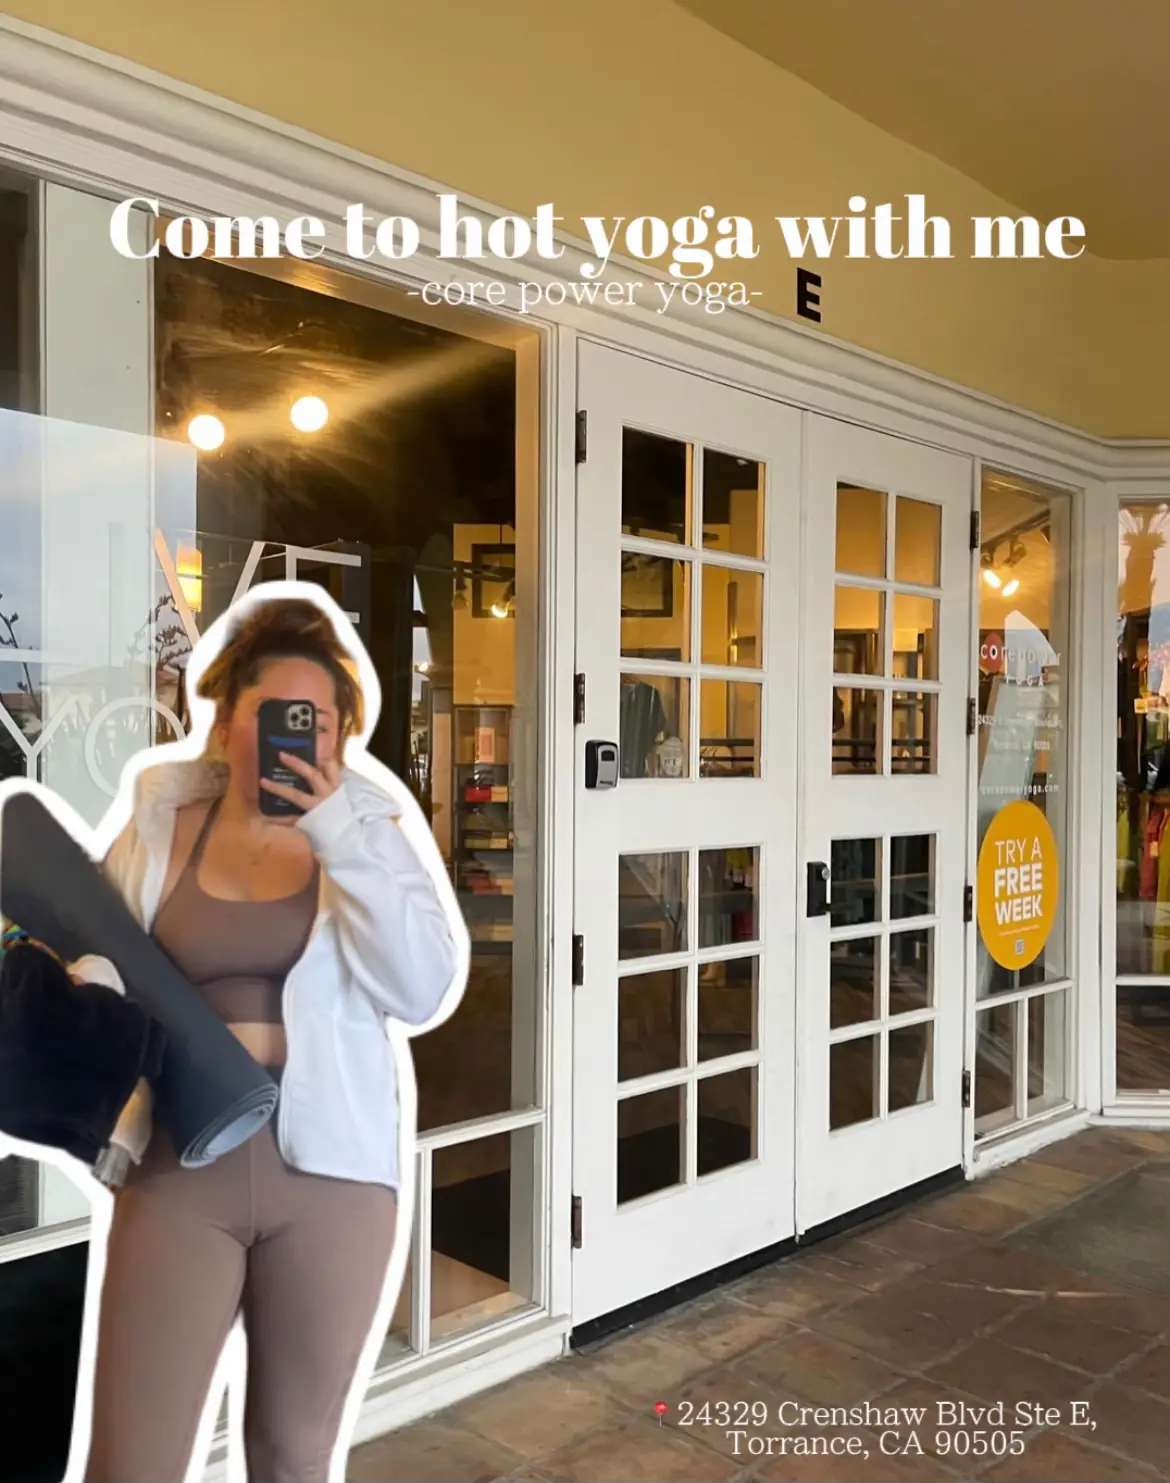 yoga top and leggings - Lemon8 Search